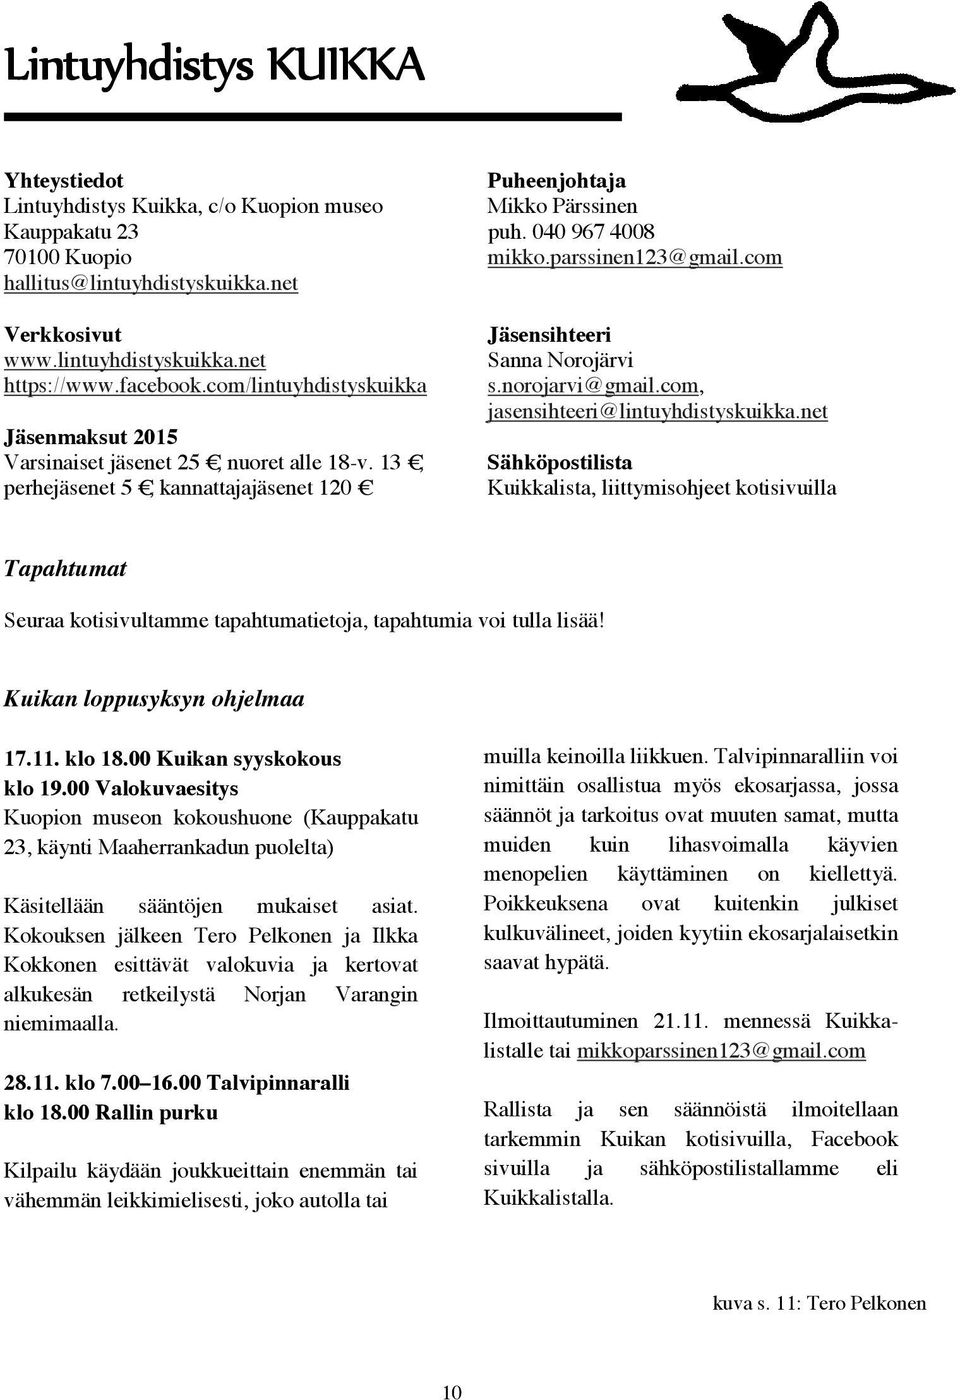 13, perhejäsenet 5, kannattajajäsenet 120 Jäsensihteeri Sanna Norojärvi s.norojarvi@gmail.com, jasensihteeri@lintuyhdistyskuikka.